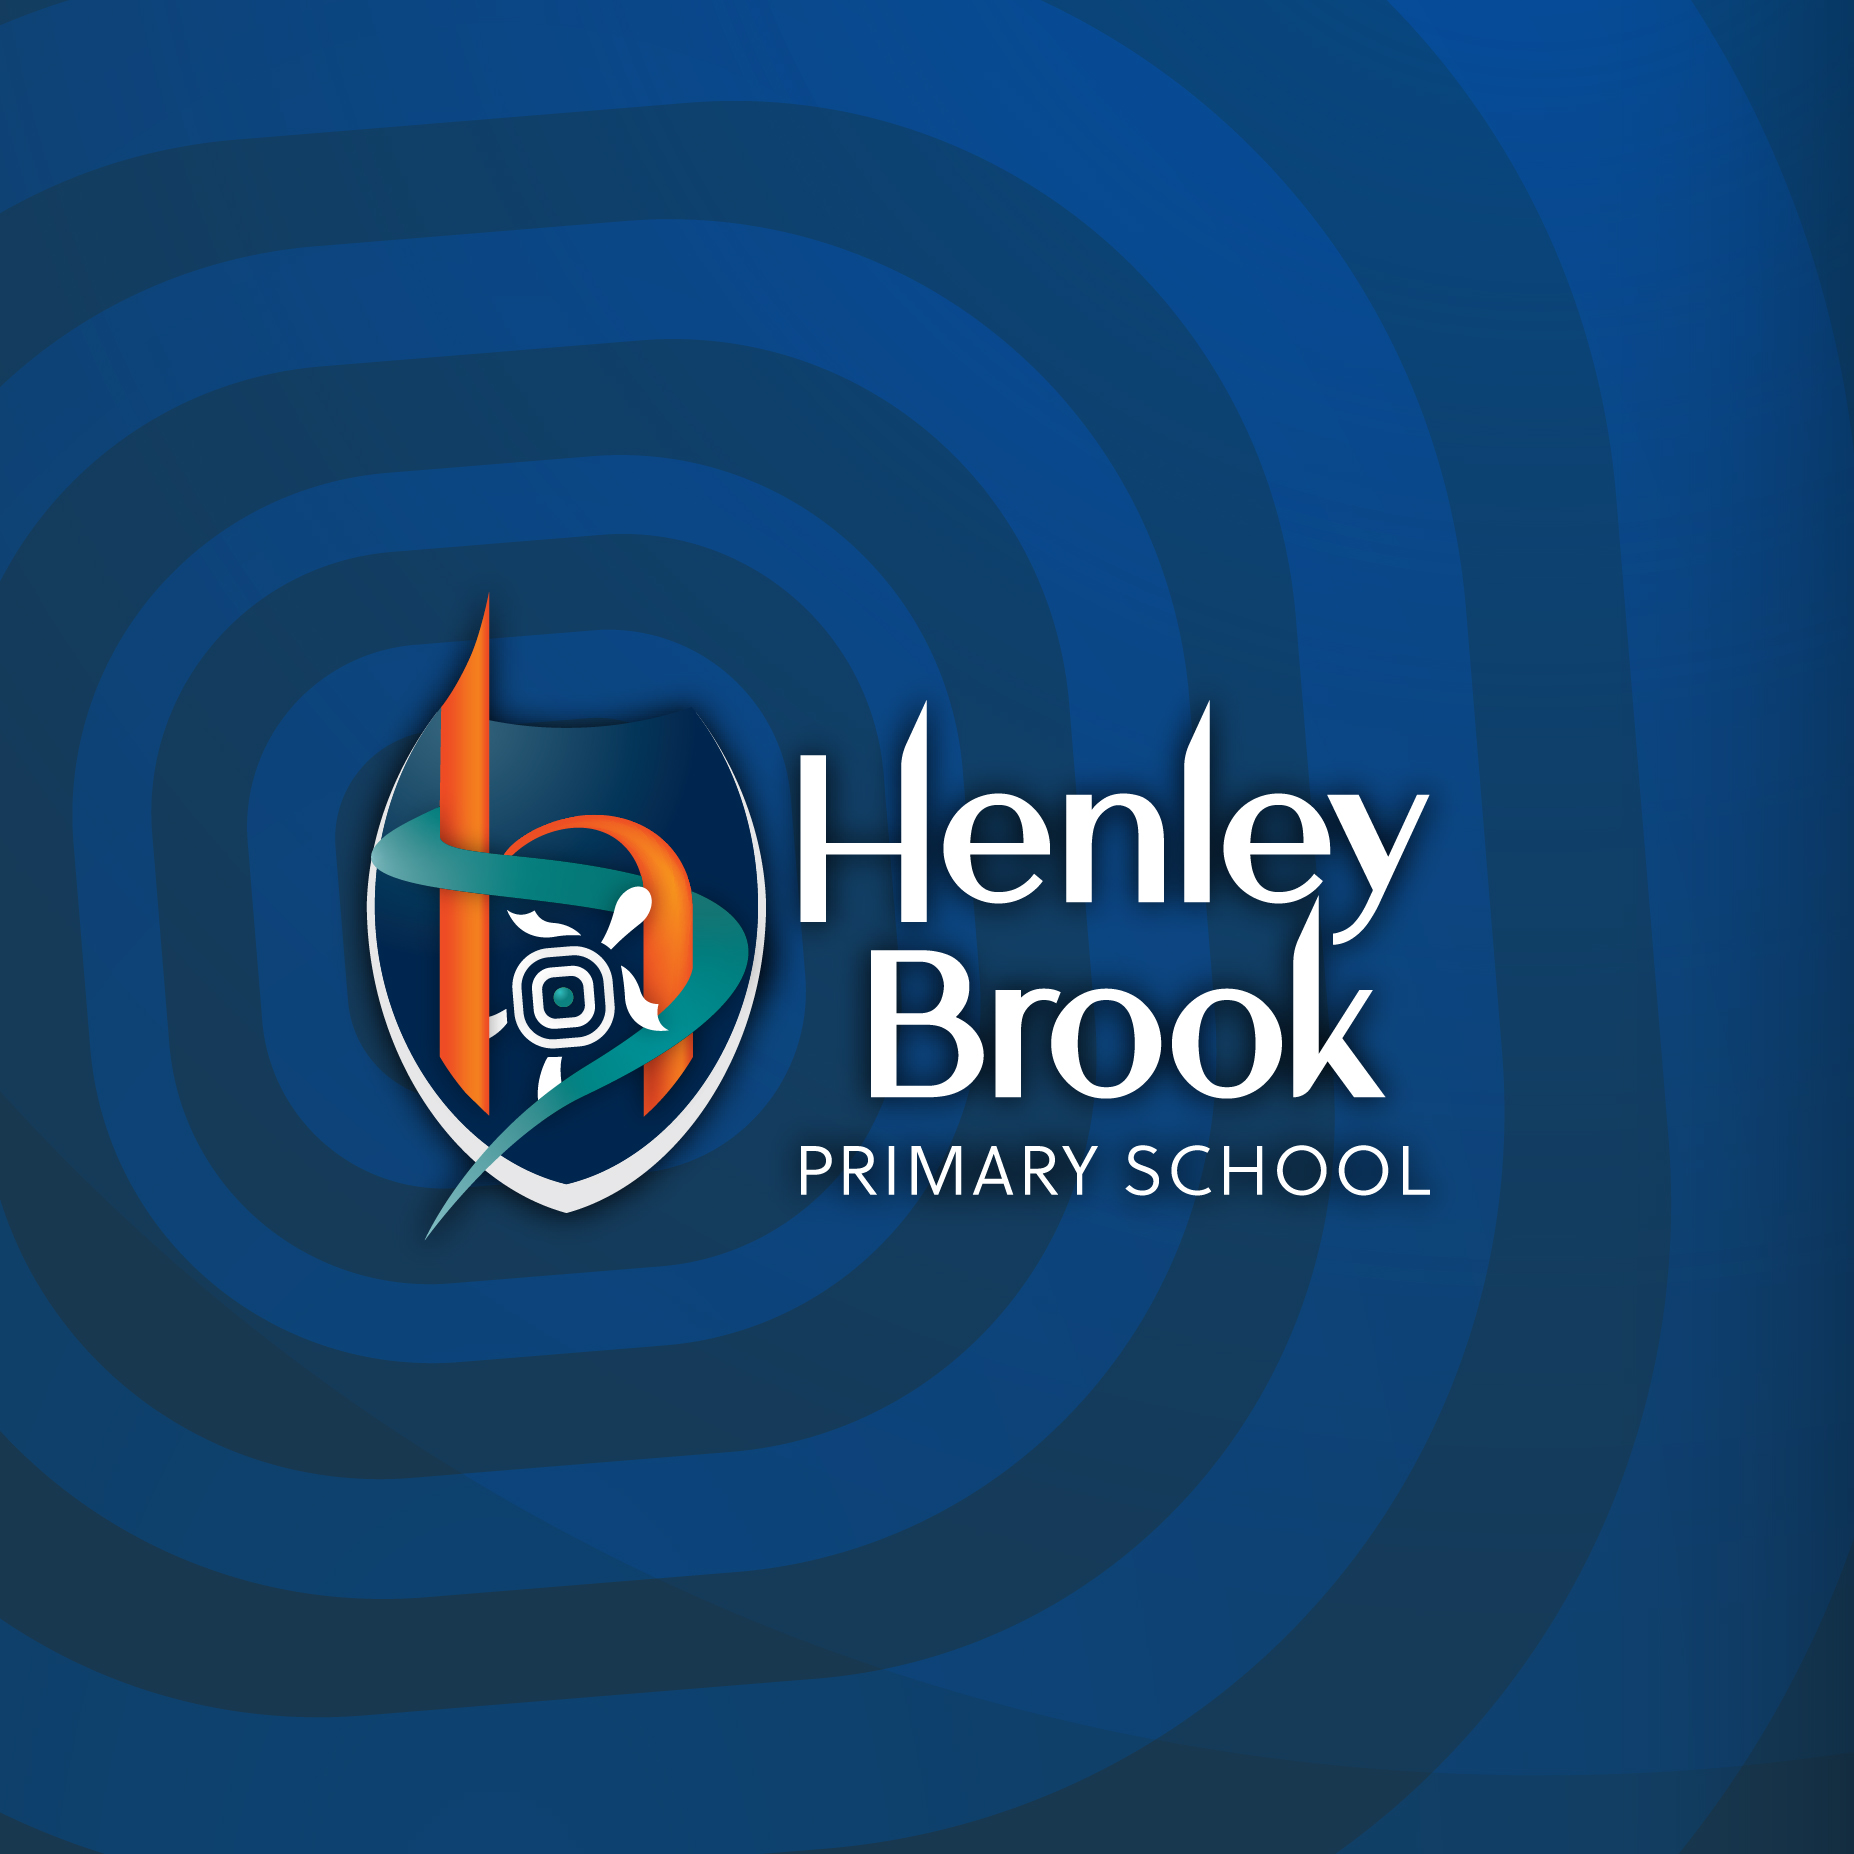 Henley Brook Primary School